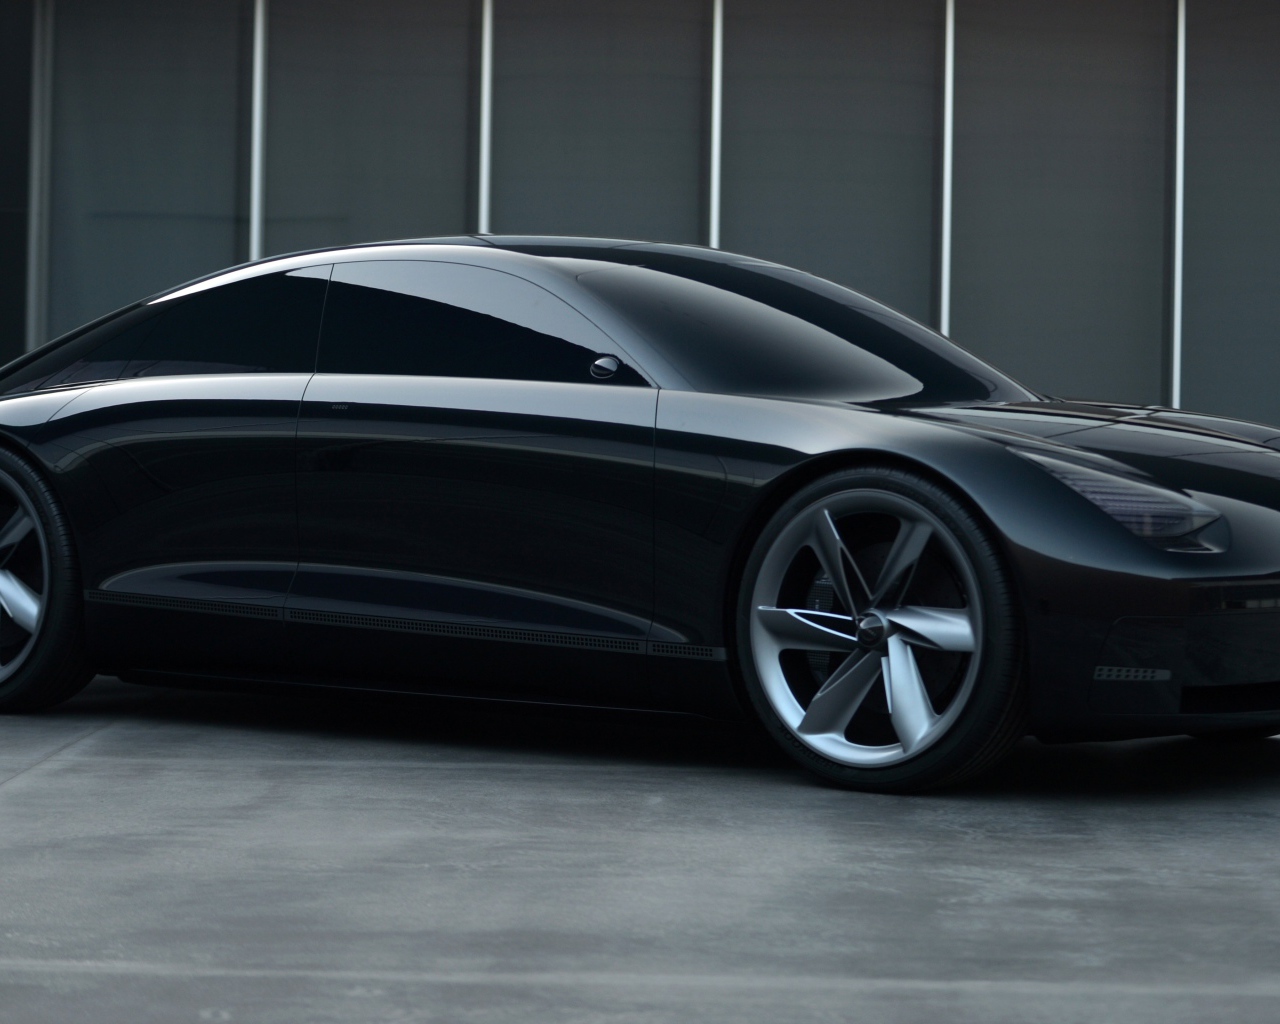 Черный автомобиль Hyundai Prophecy 2020 года вид сбоку 